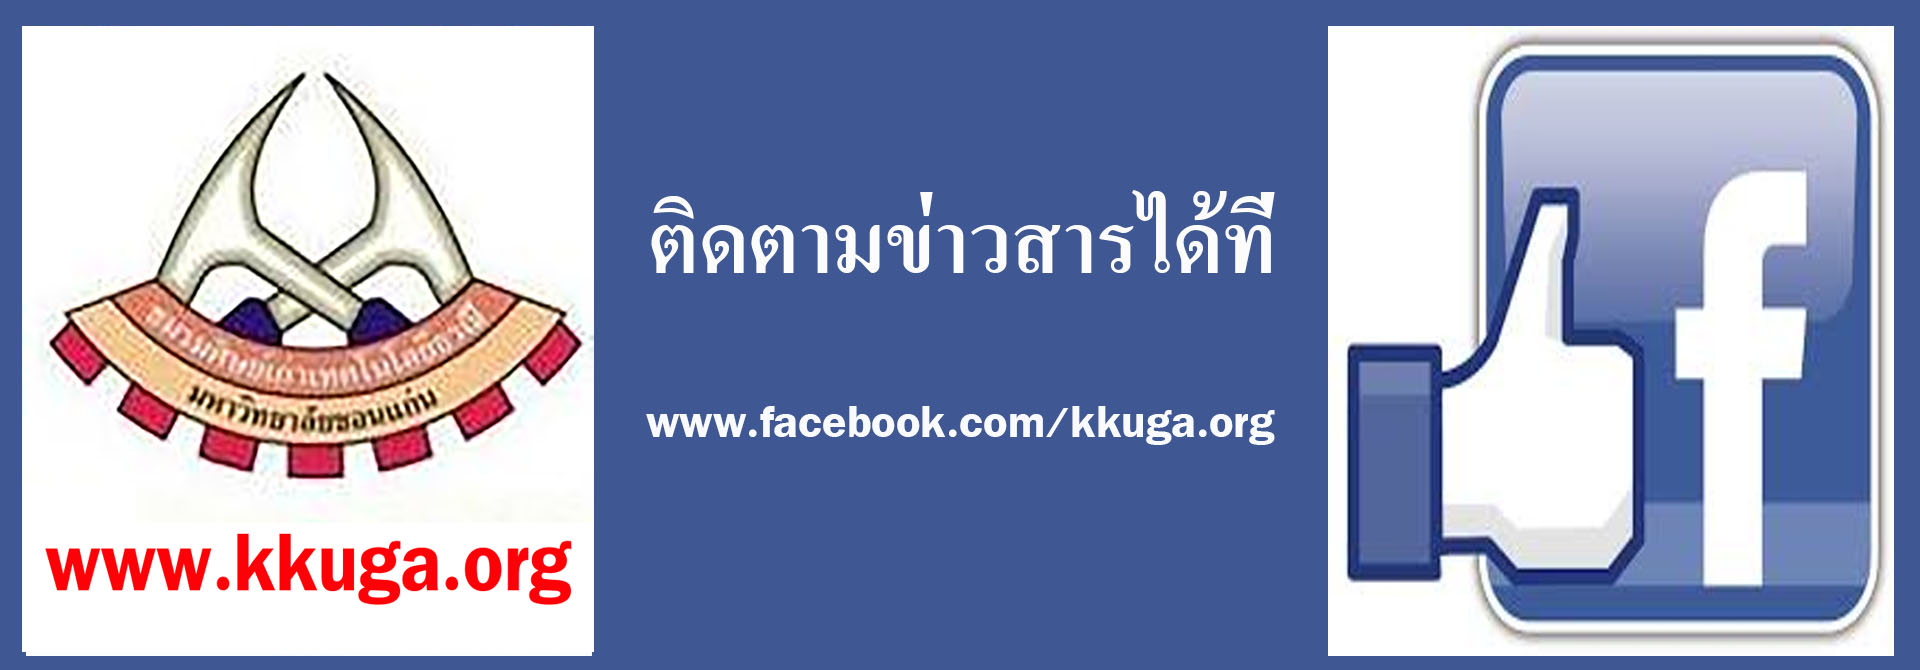 kkuga.org Facebook.com